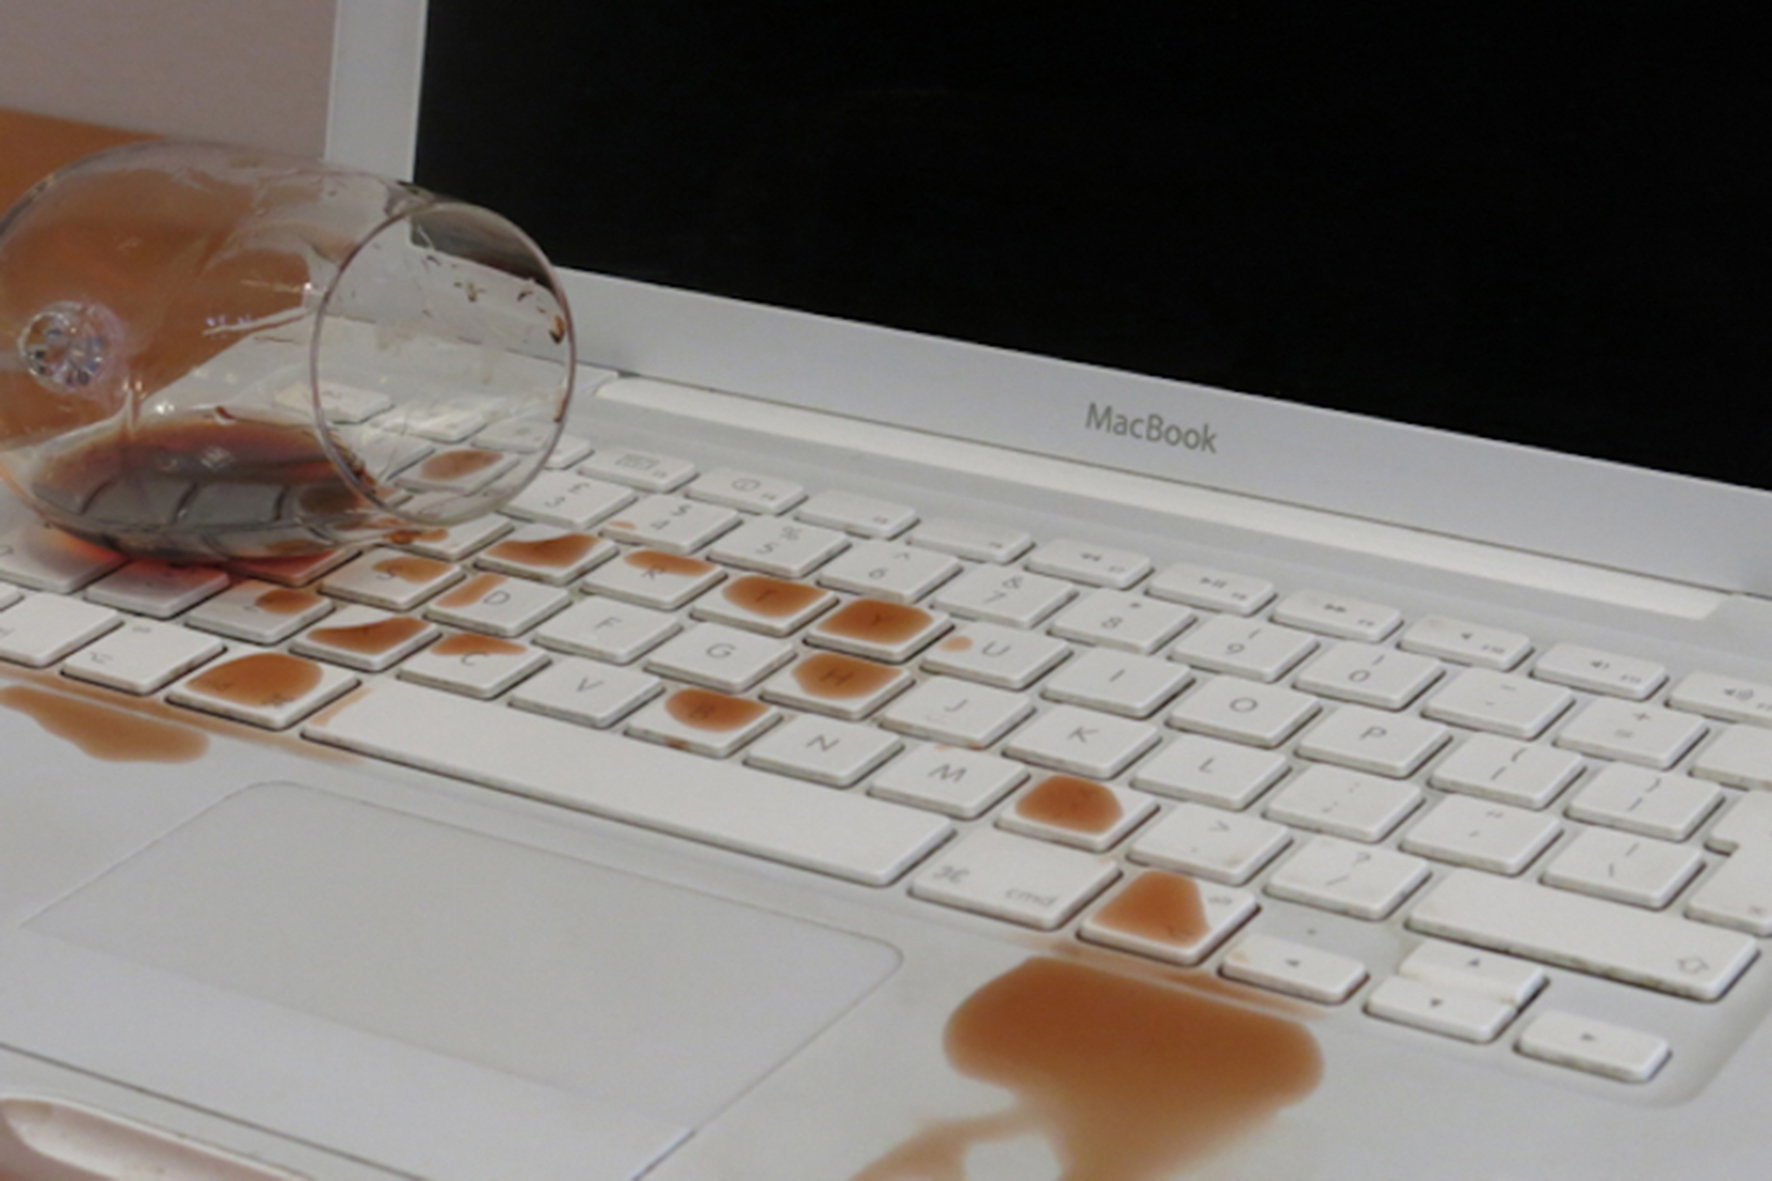 Ноутбук после воды. Пролили жидкость на ноутбук. Пролил на клавиатуру. Пролили воду на ноутбук. Пролитая жидкость на клавиатуру ноутбука.